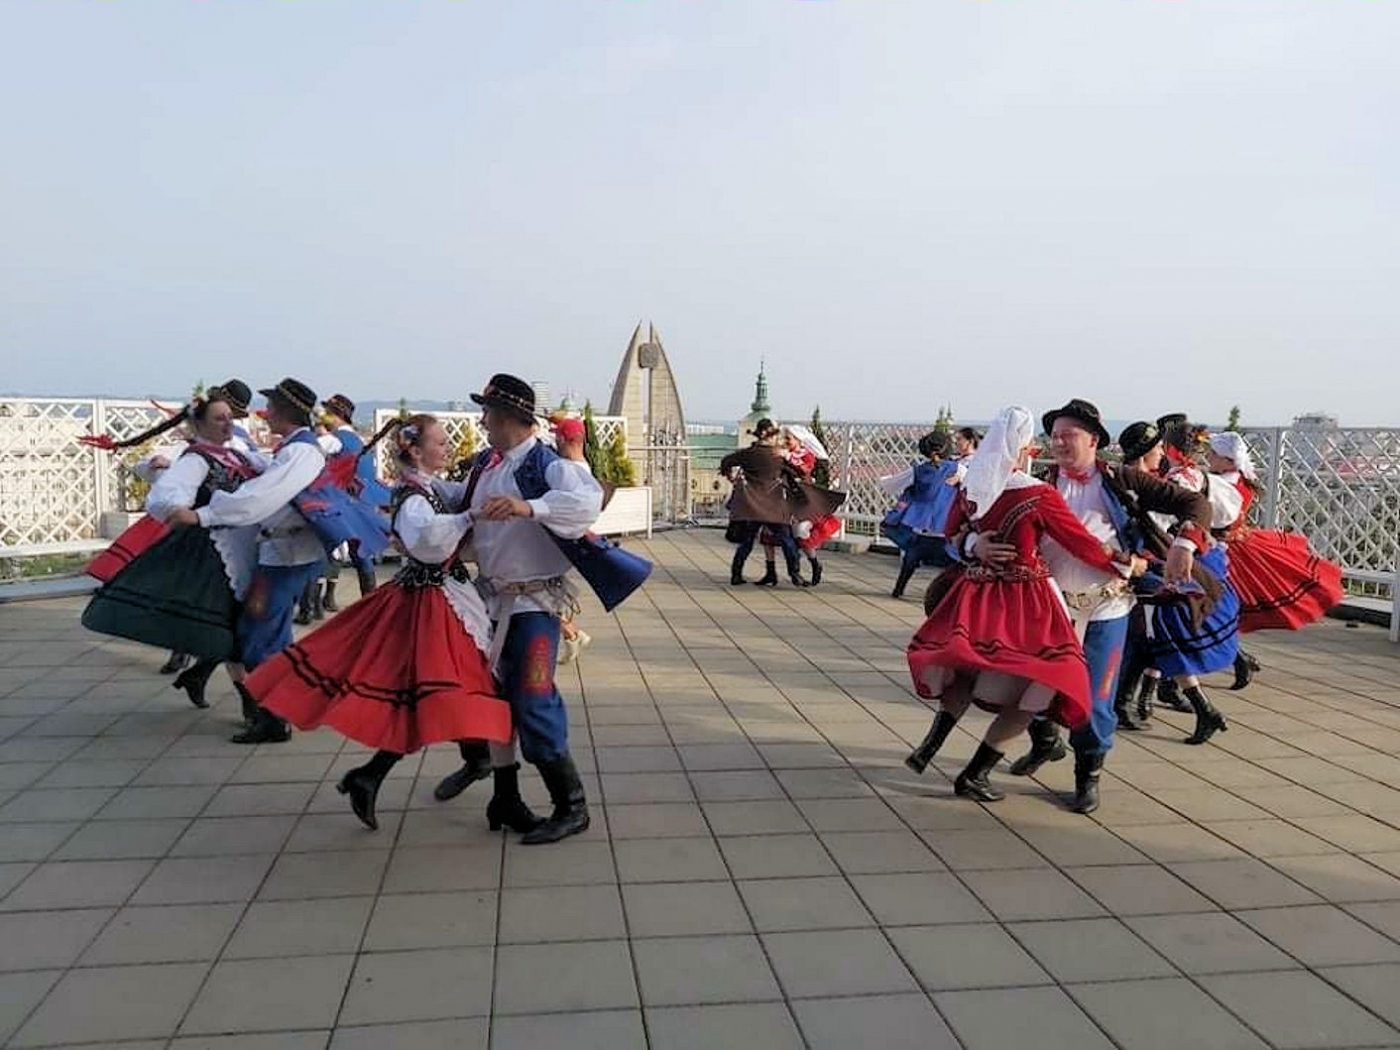 Zespół tańczy na punkcie widokowym hotelu rzeszów